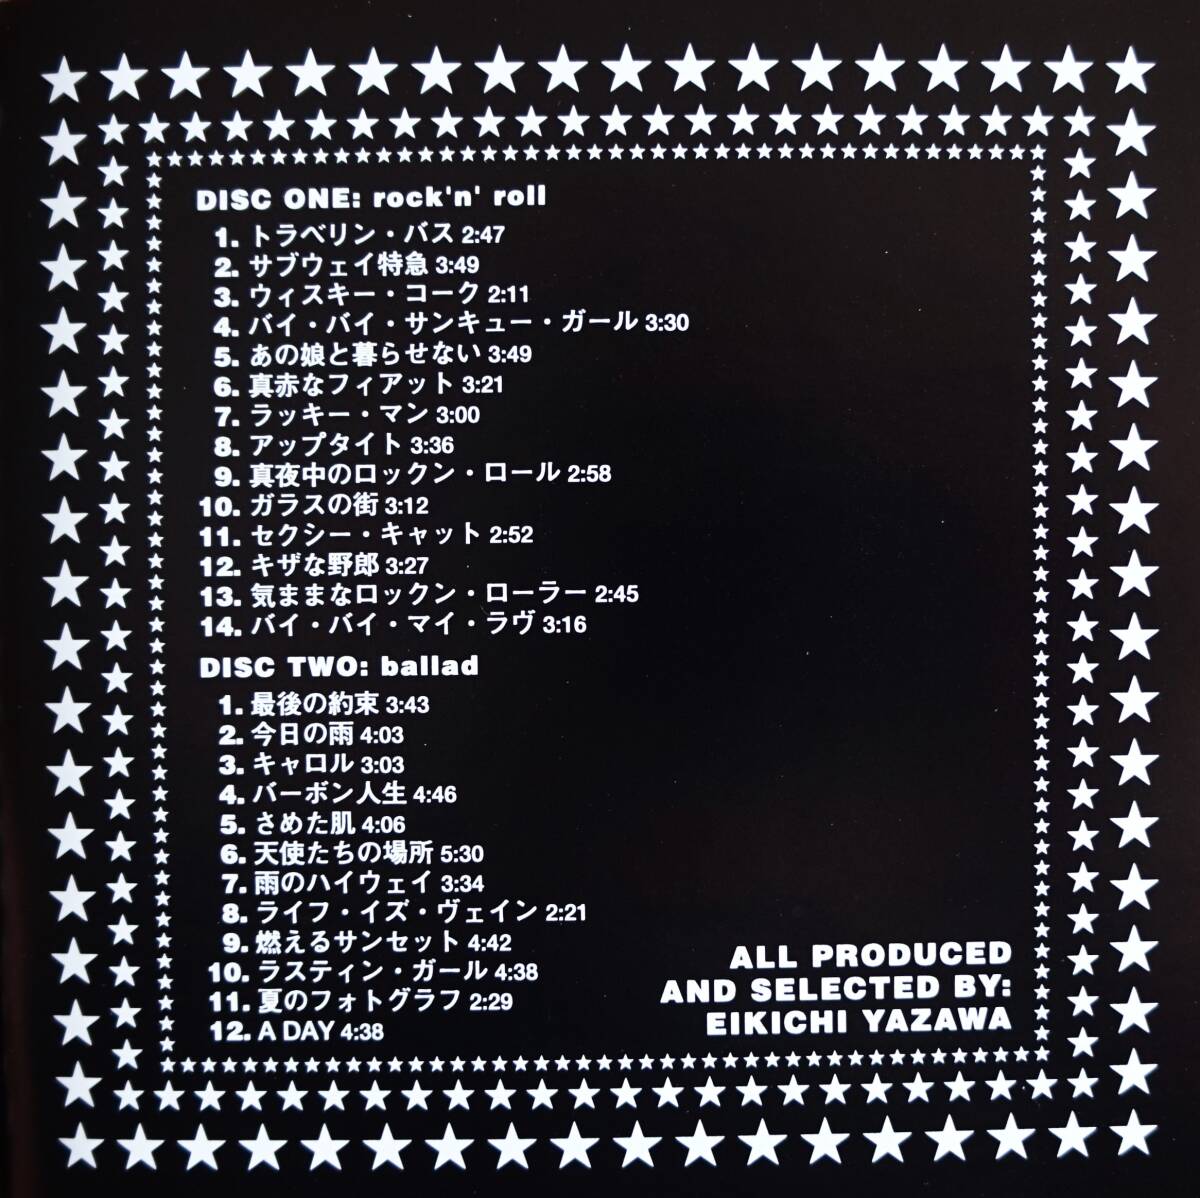 【2枚組CD】矢沢永吉 / THE GREAT OF ALL VOL.2 →キャロル・トラベリン バス・サブウェイ特急・ウィスキー コーク・雨のハイウェイ_画像4